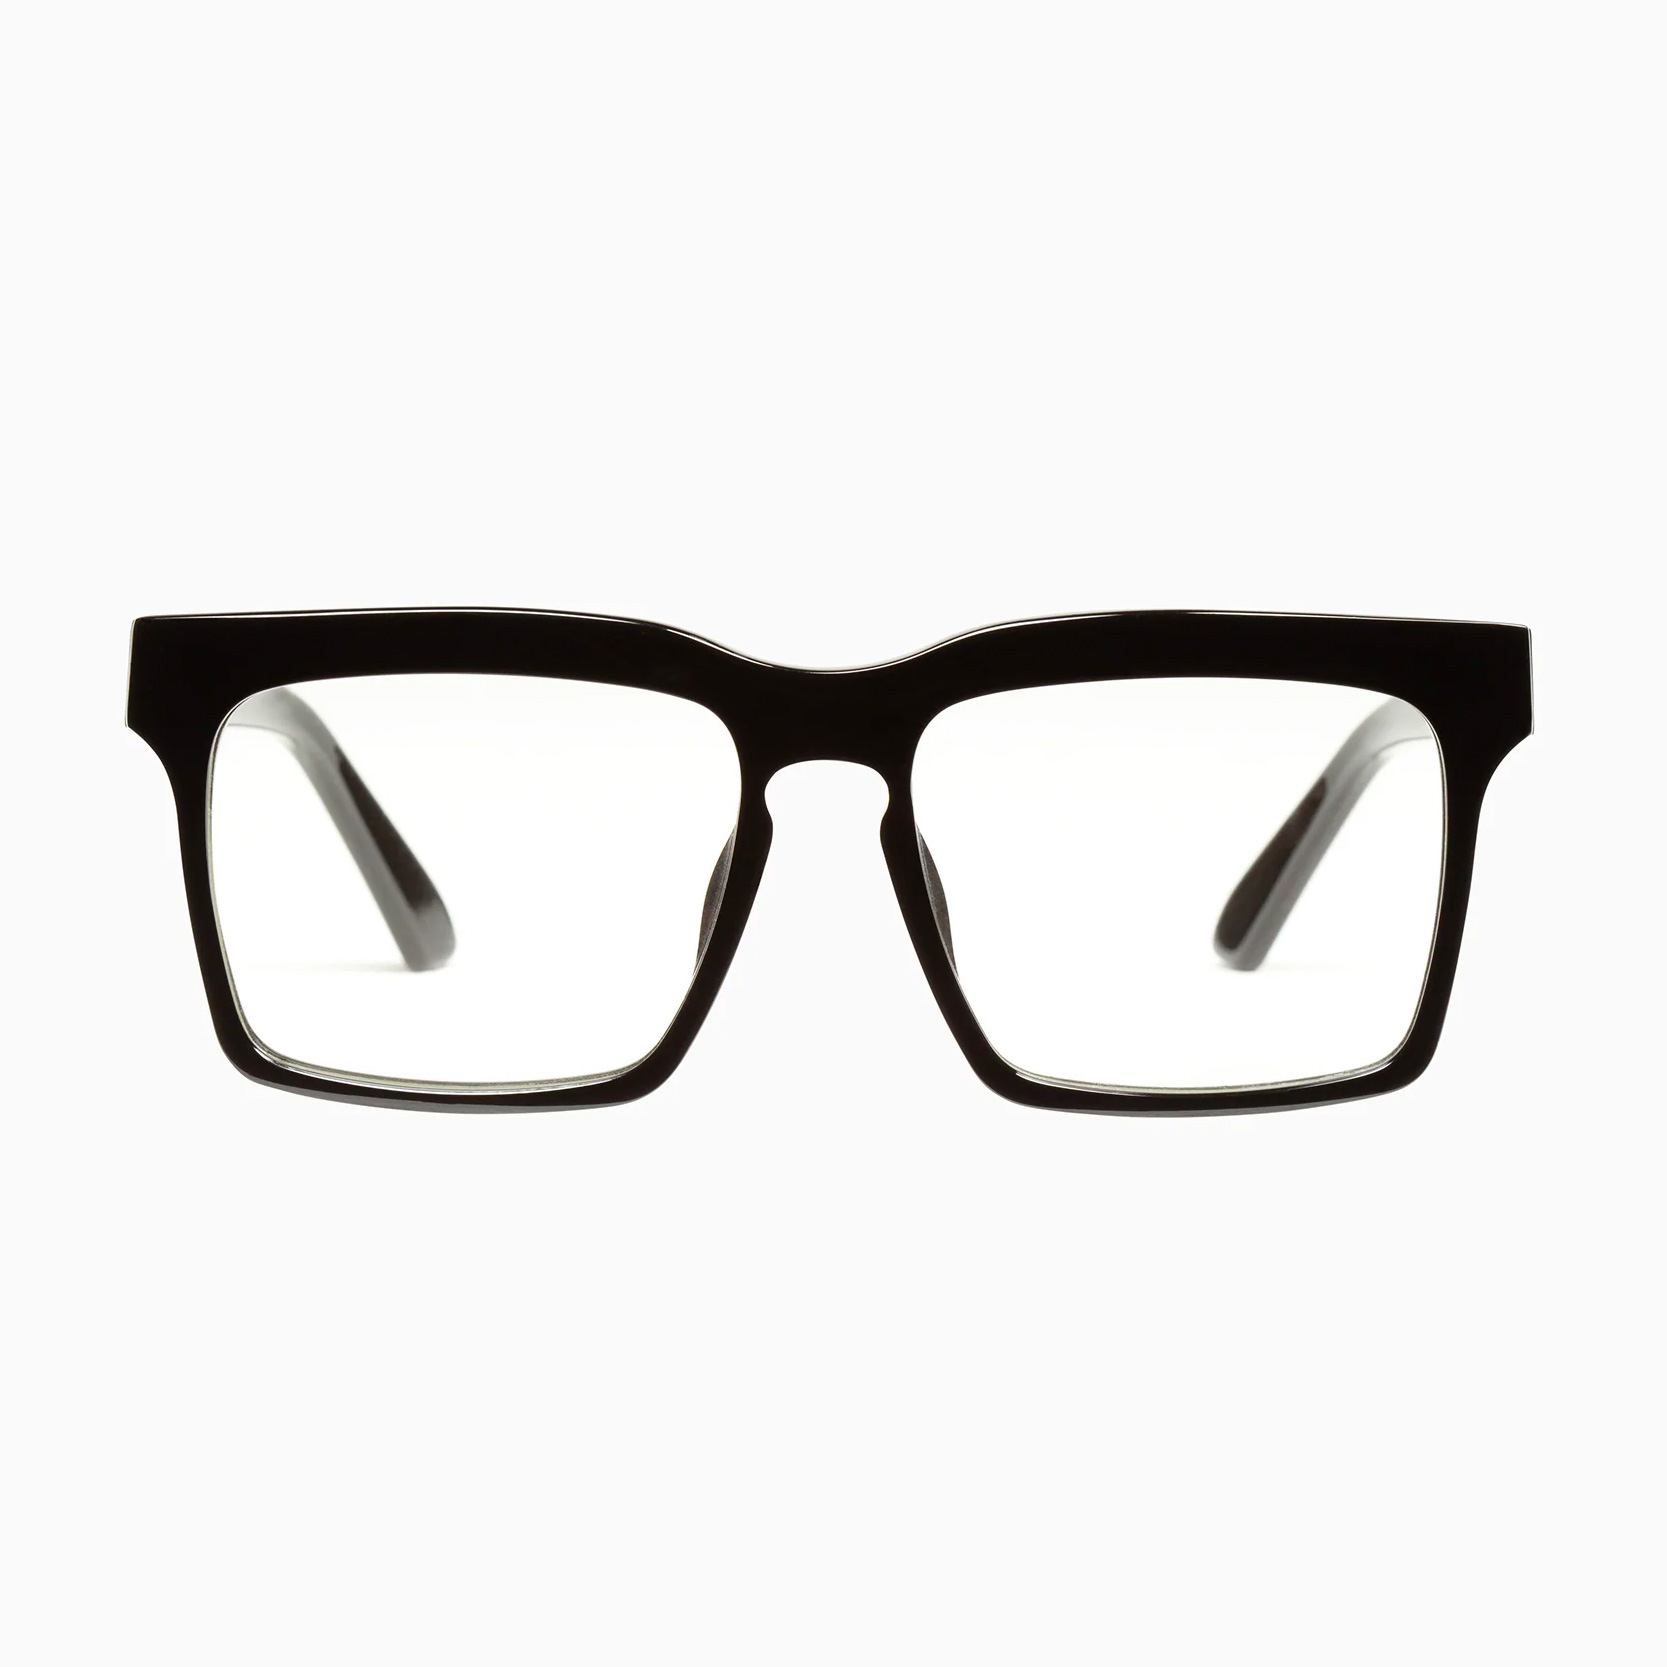 Meniscus Valley Glasses for men - The Eye Makers